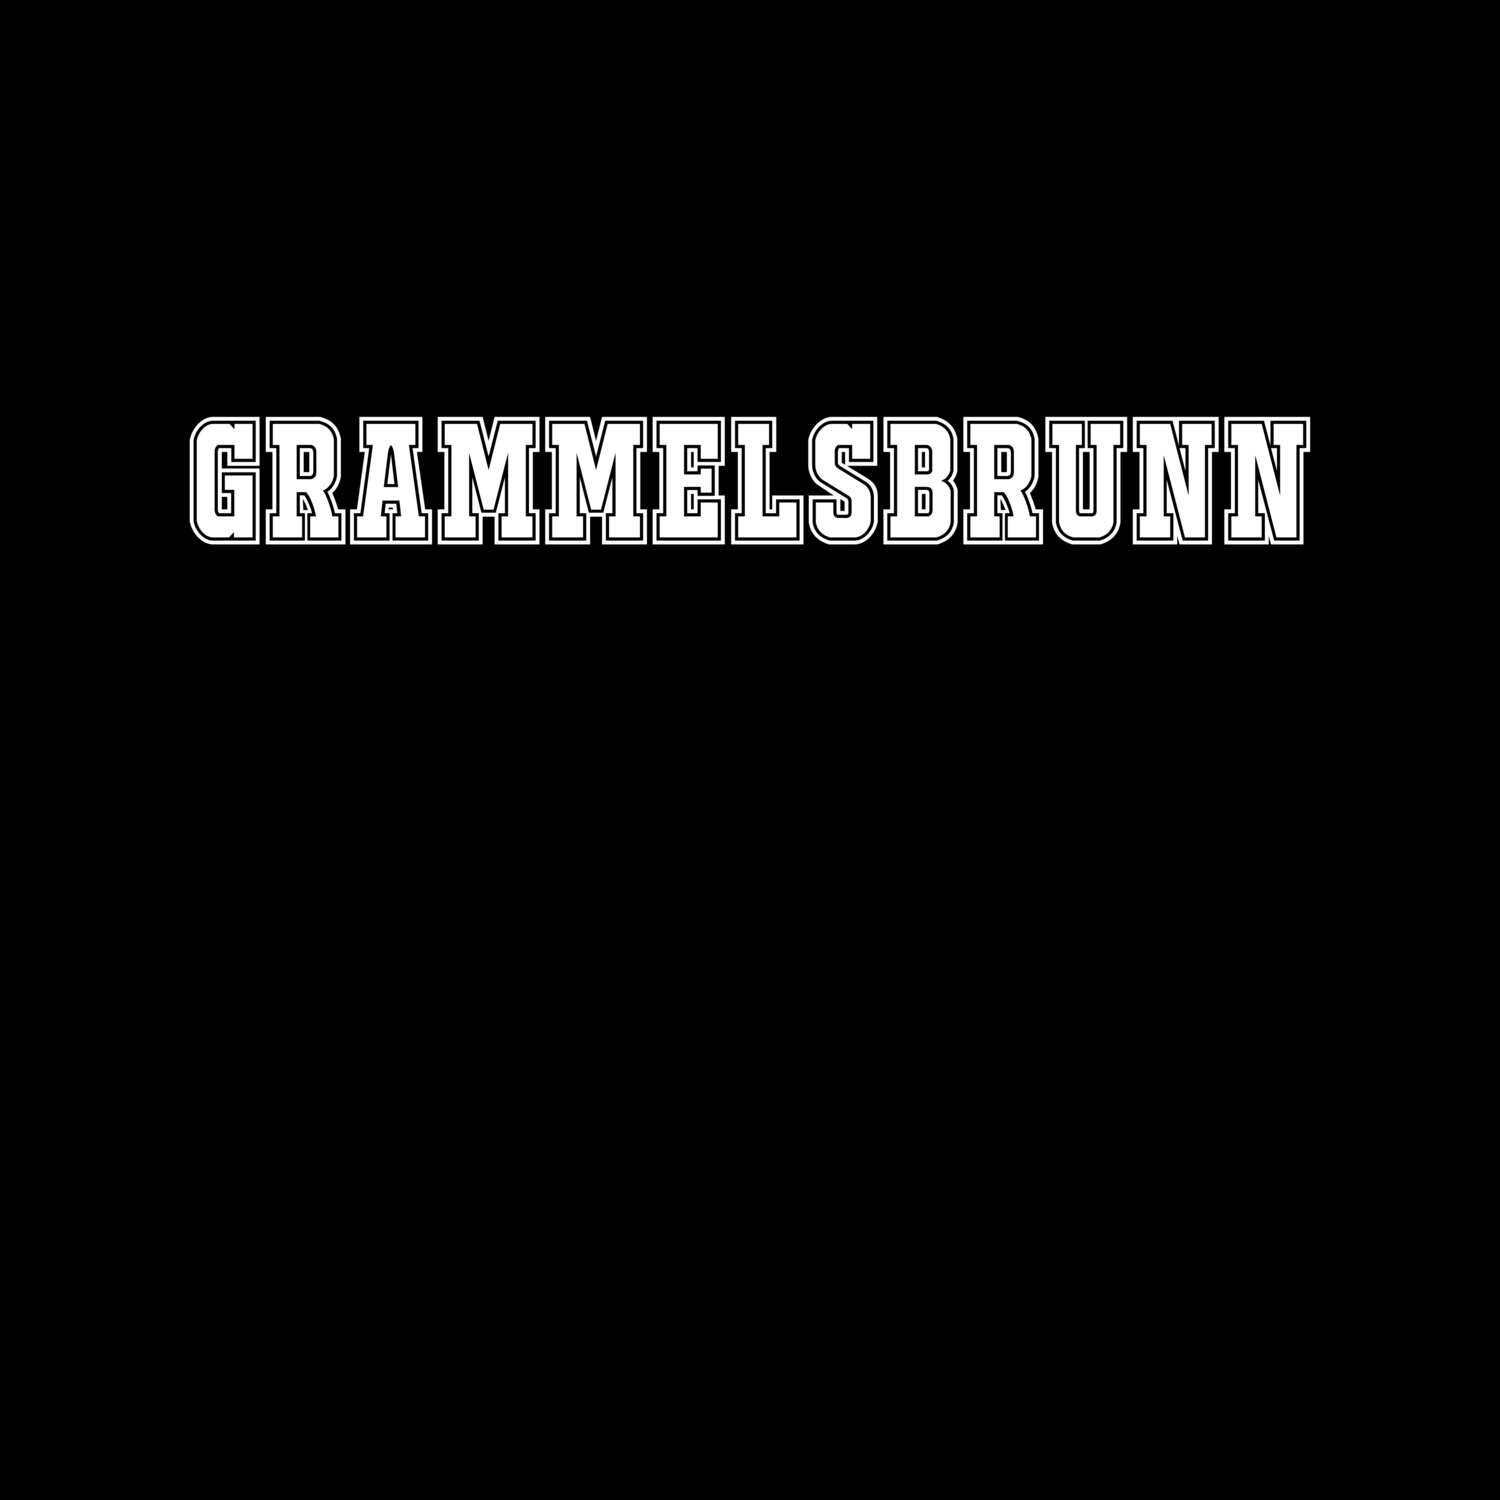 Grammelsbrunn T-Shirt »Classic«